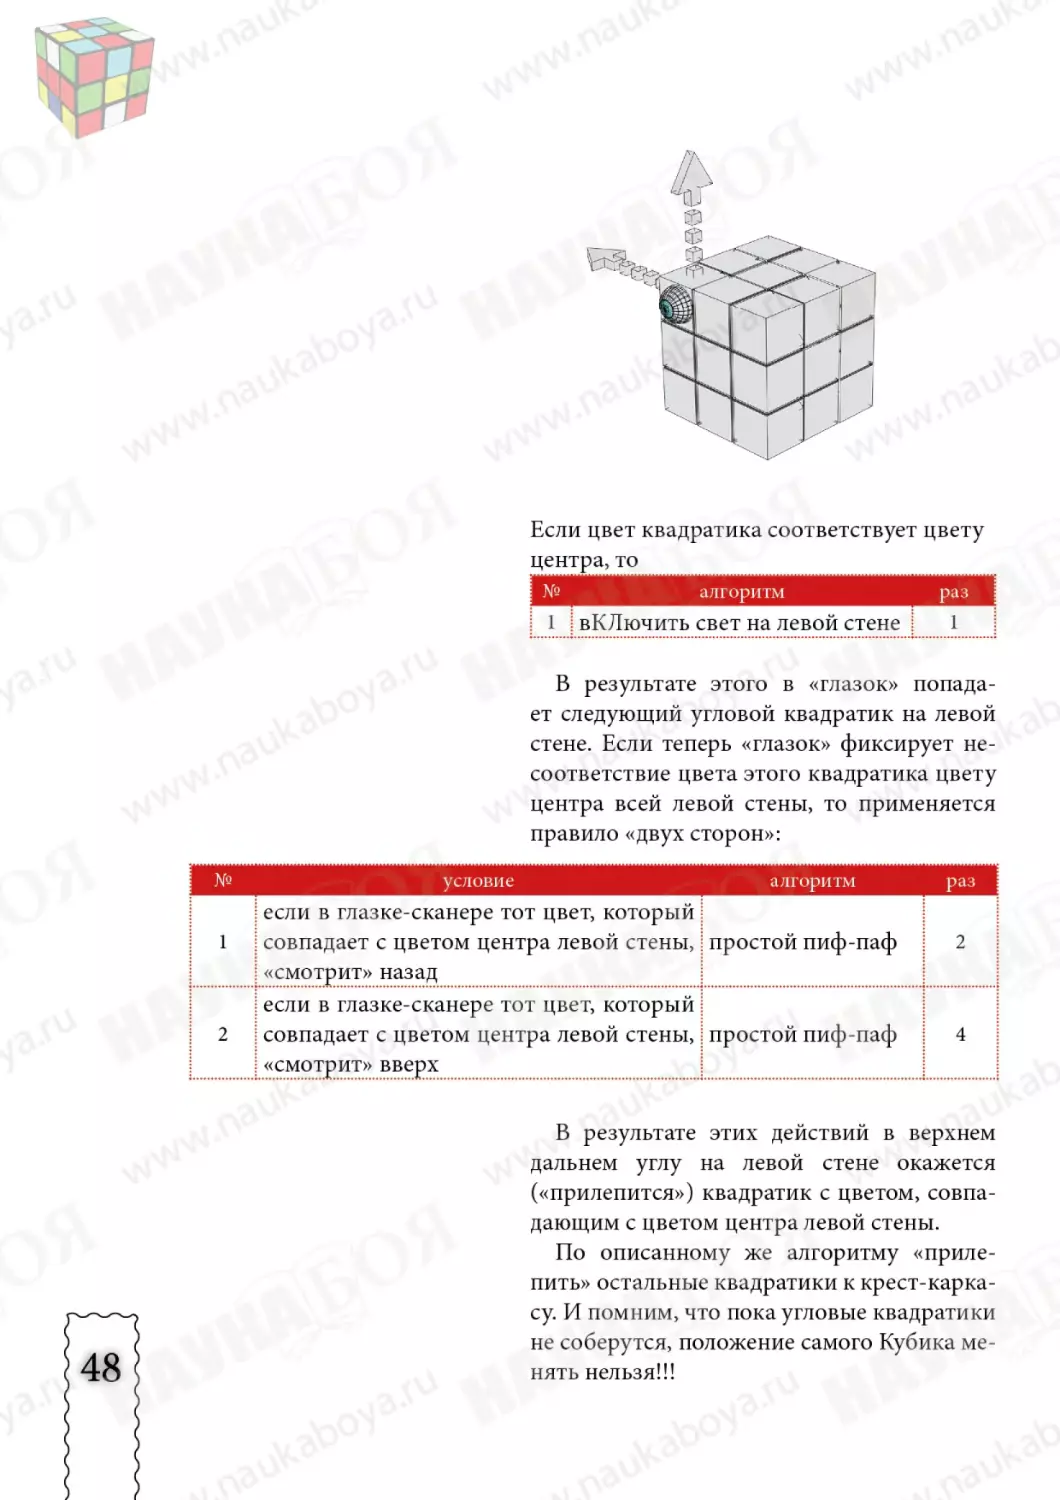 cube3x3x3_new48.pdf (p.48)